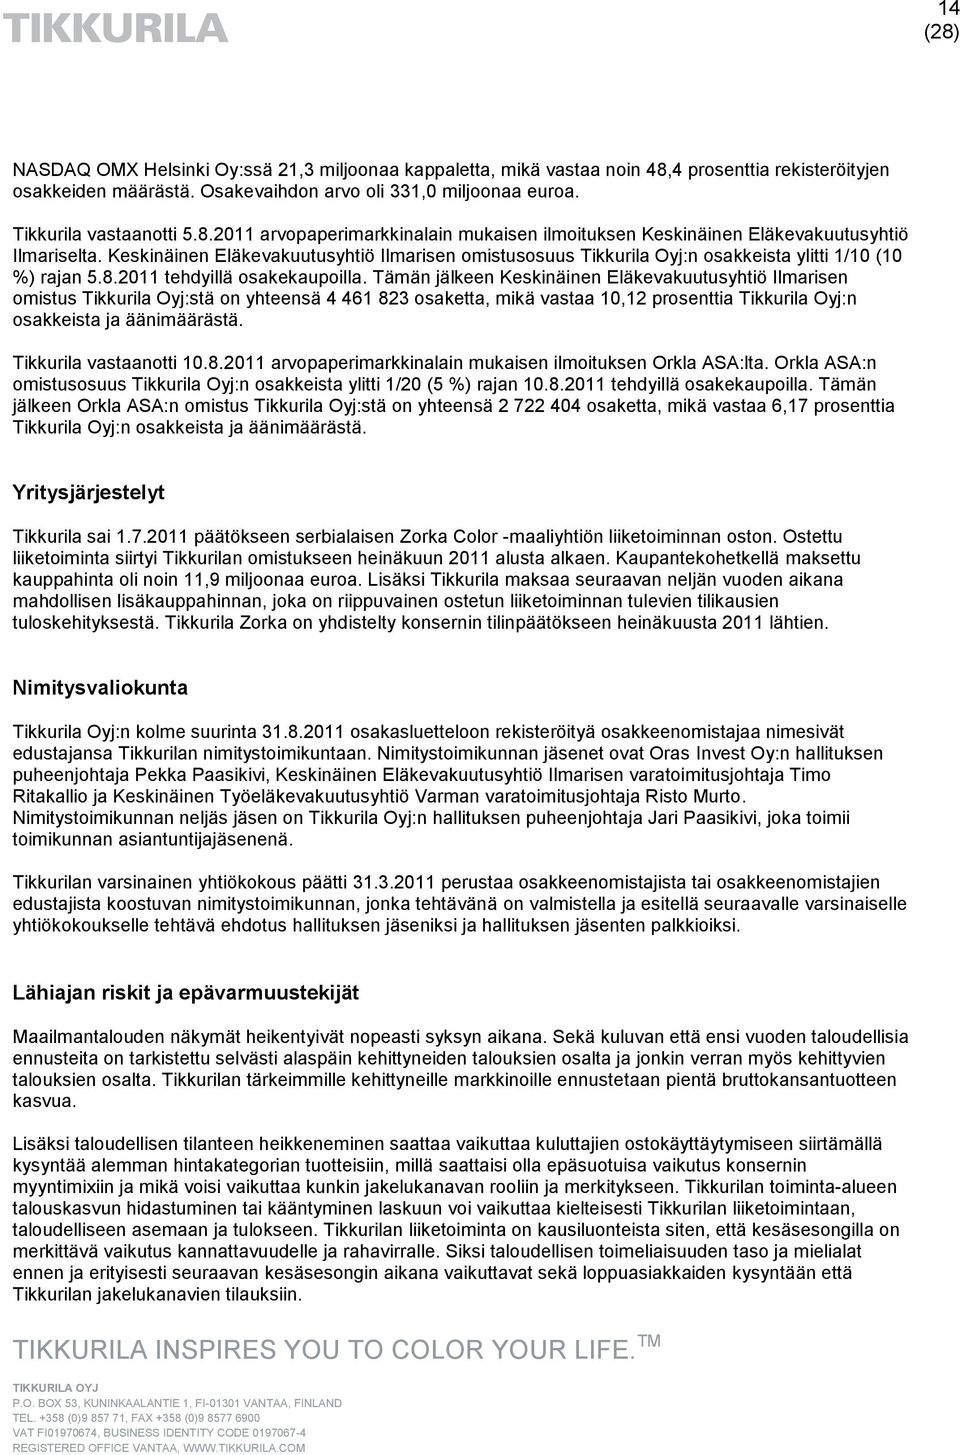 Tämän jälkeen Keskinäinen Eläkevakuutusyhtiö Ilmarisen omistus Tikkurila Oyj:stä on yhteensä 4 461 823 osaketta, mikä vastaa 10,12 prosenttia Tikkurila Oyj:n osakkeista ja äänimäärästä.